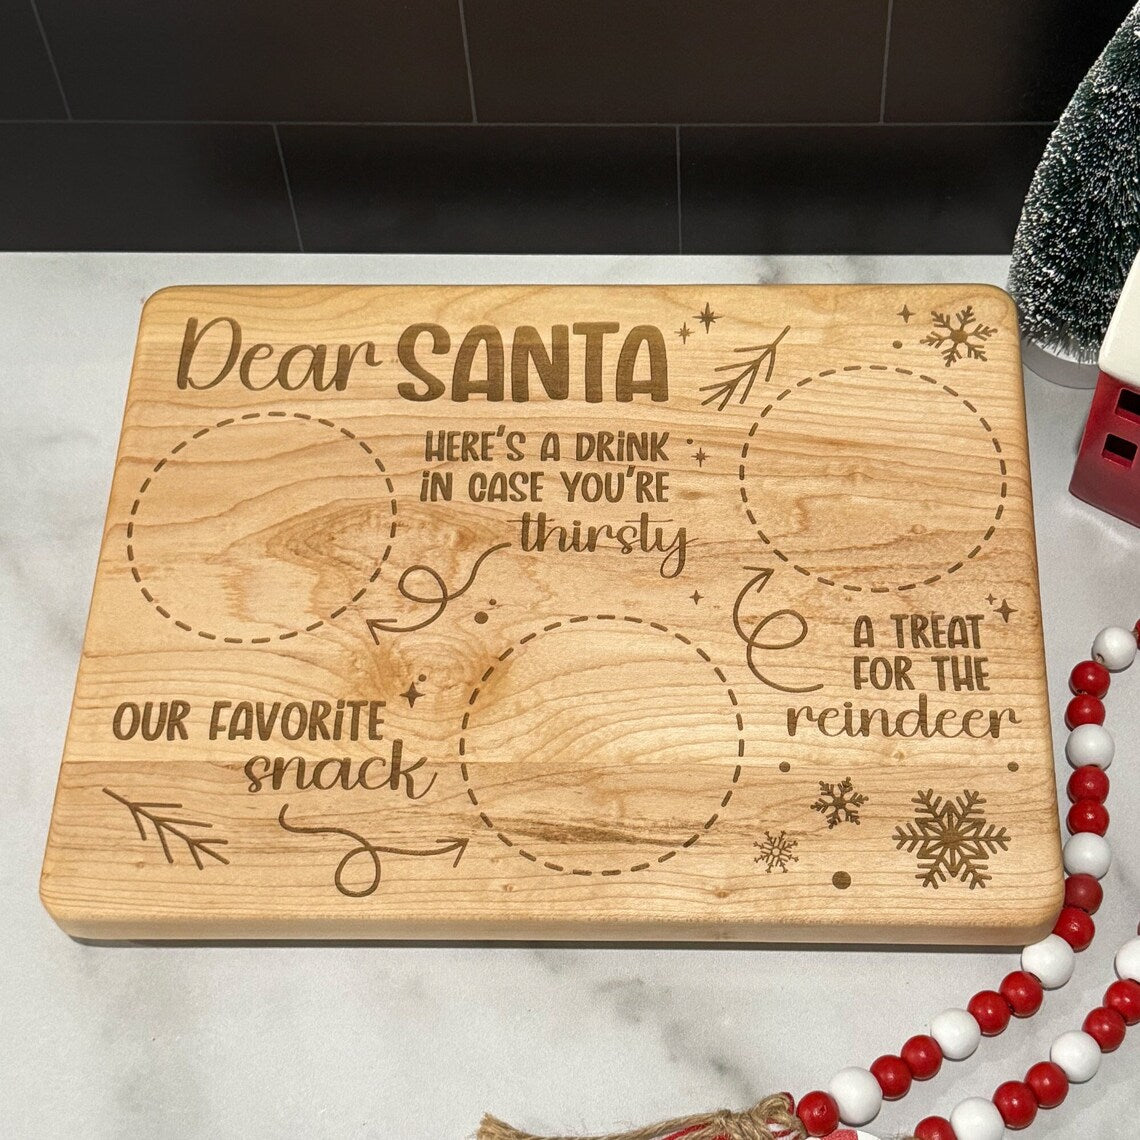 Dear Santa Santa Tray / Cutting Board.